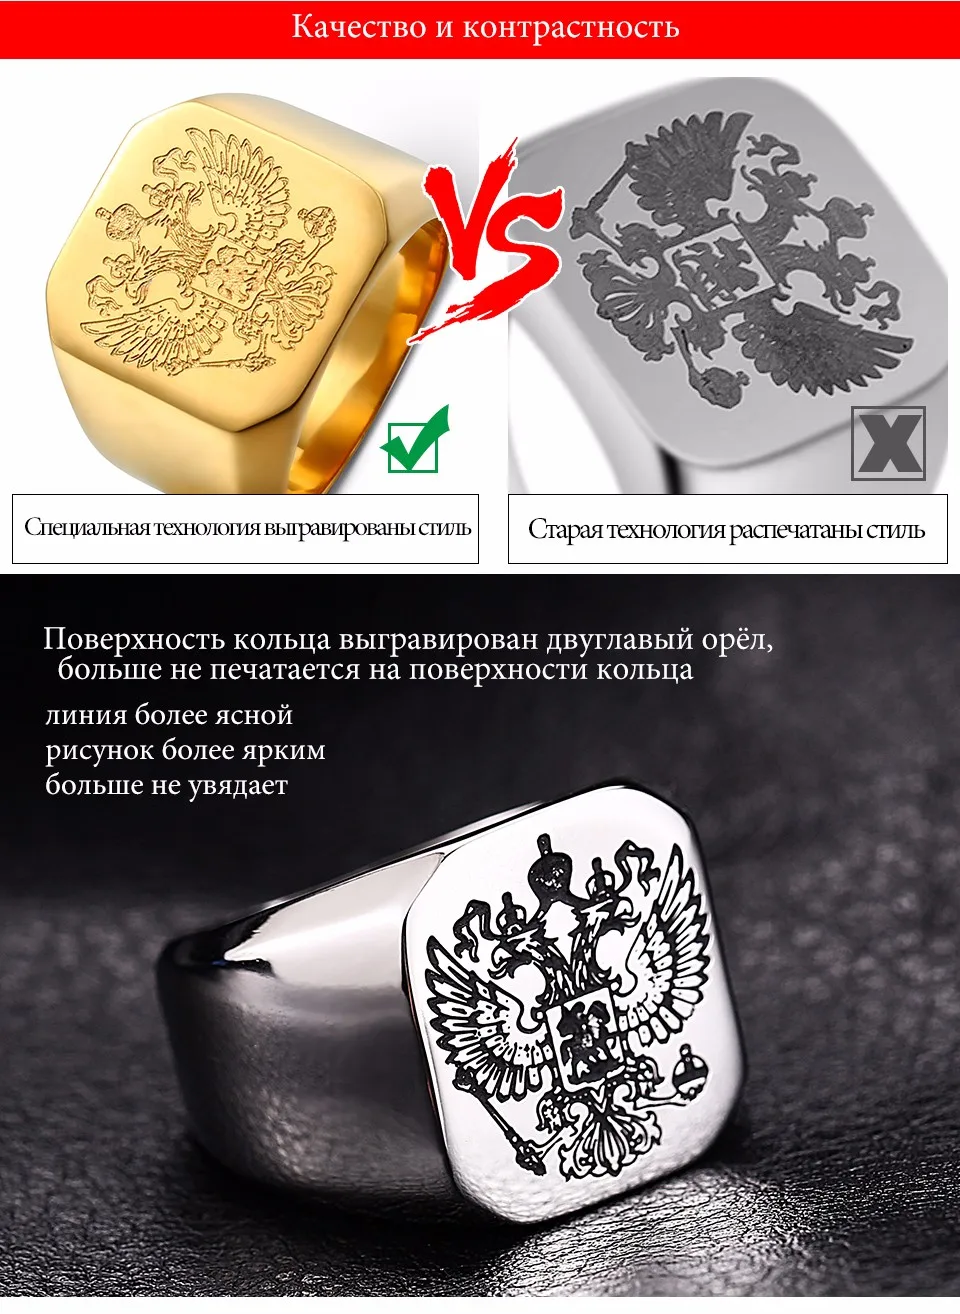 Байер полированное кольцо из нержавеющей стали, байкерское мужское кольцо, герб Российской печатки, модное ювелирное изделие, LLBR8-353R